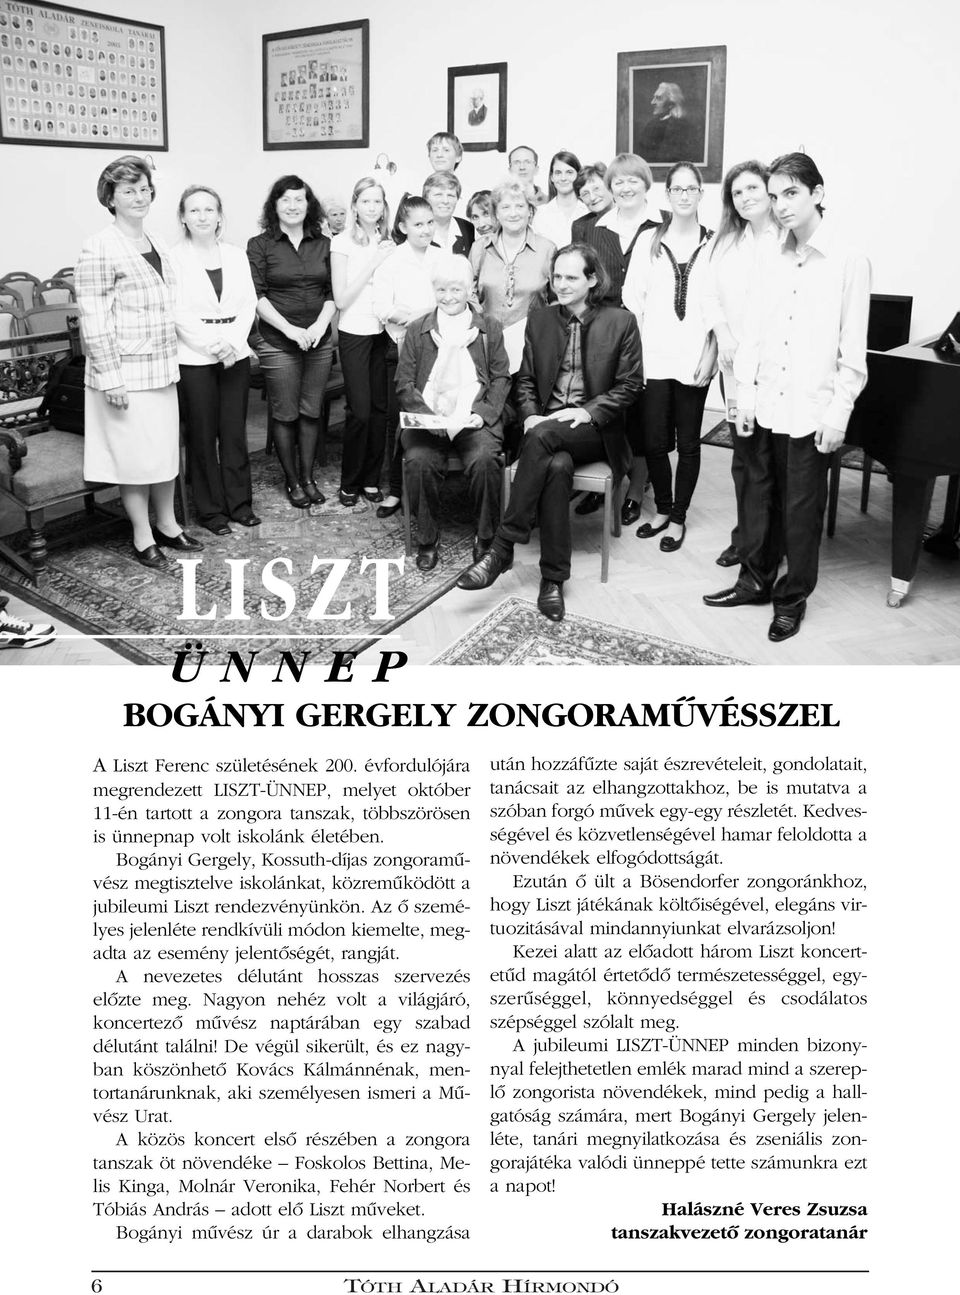 Bogányi Gergely, Kossuth-díjas zongoramûvész megtisztelve iskolánkat, közremûködött a jubileumi Liszt rendezvényünkön.